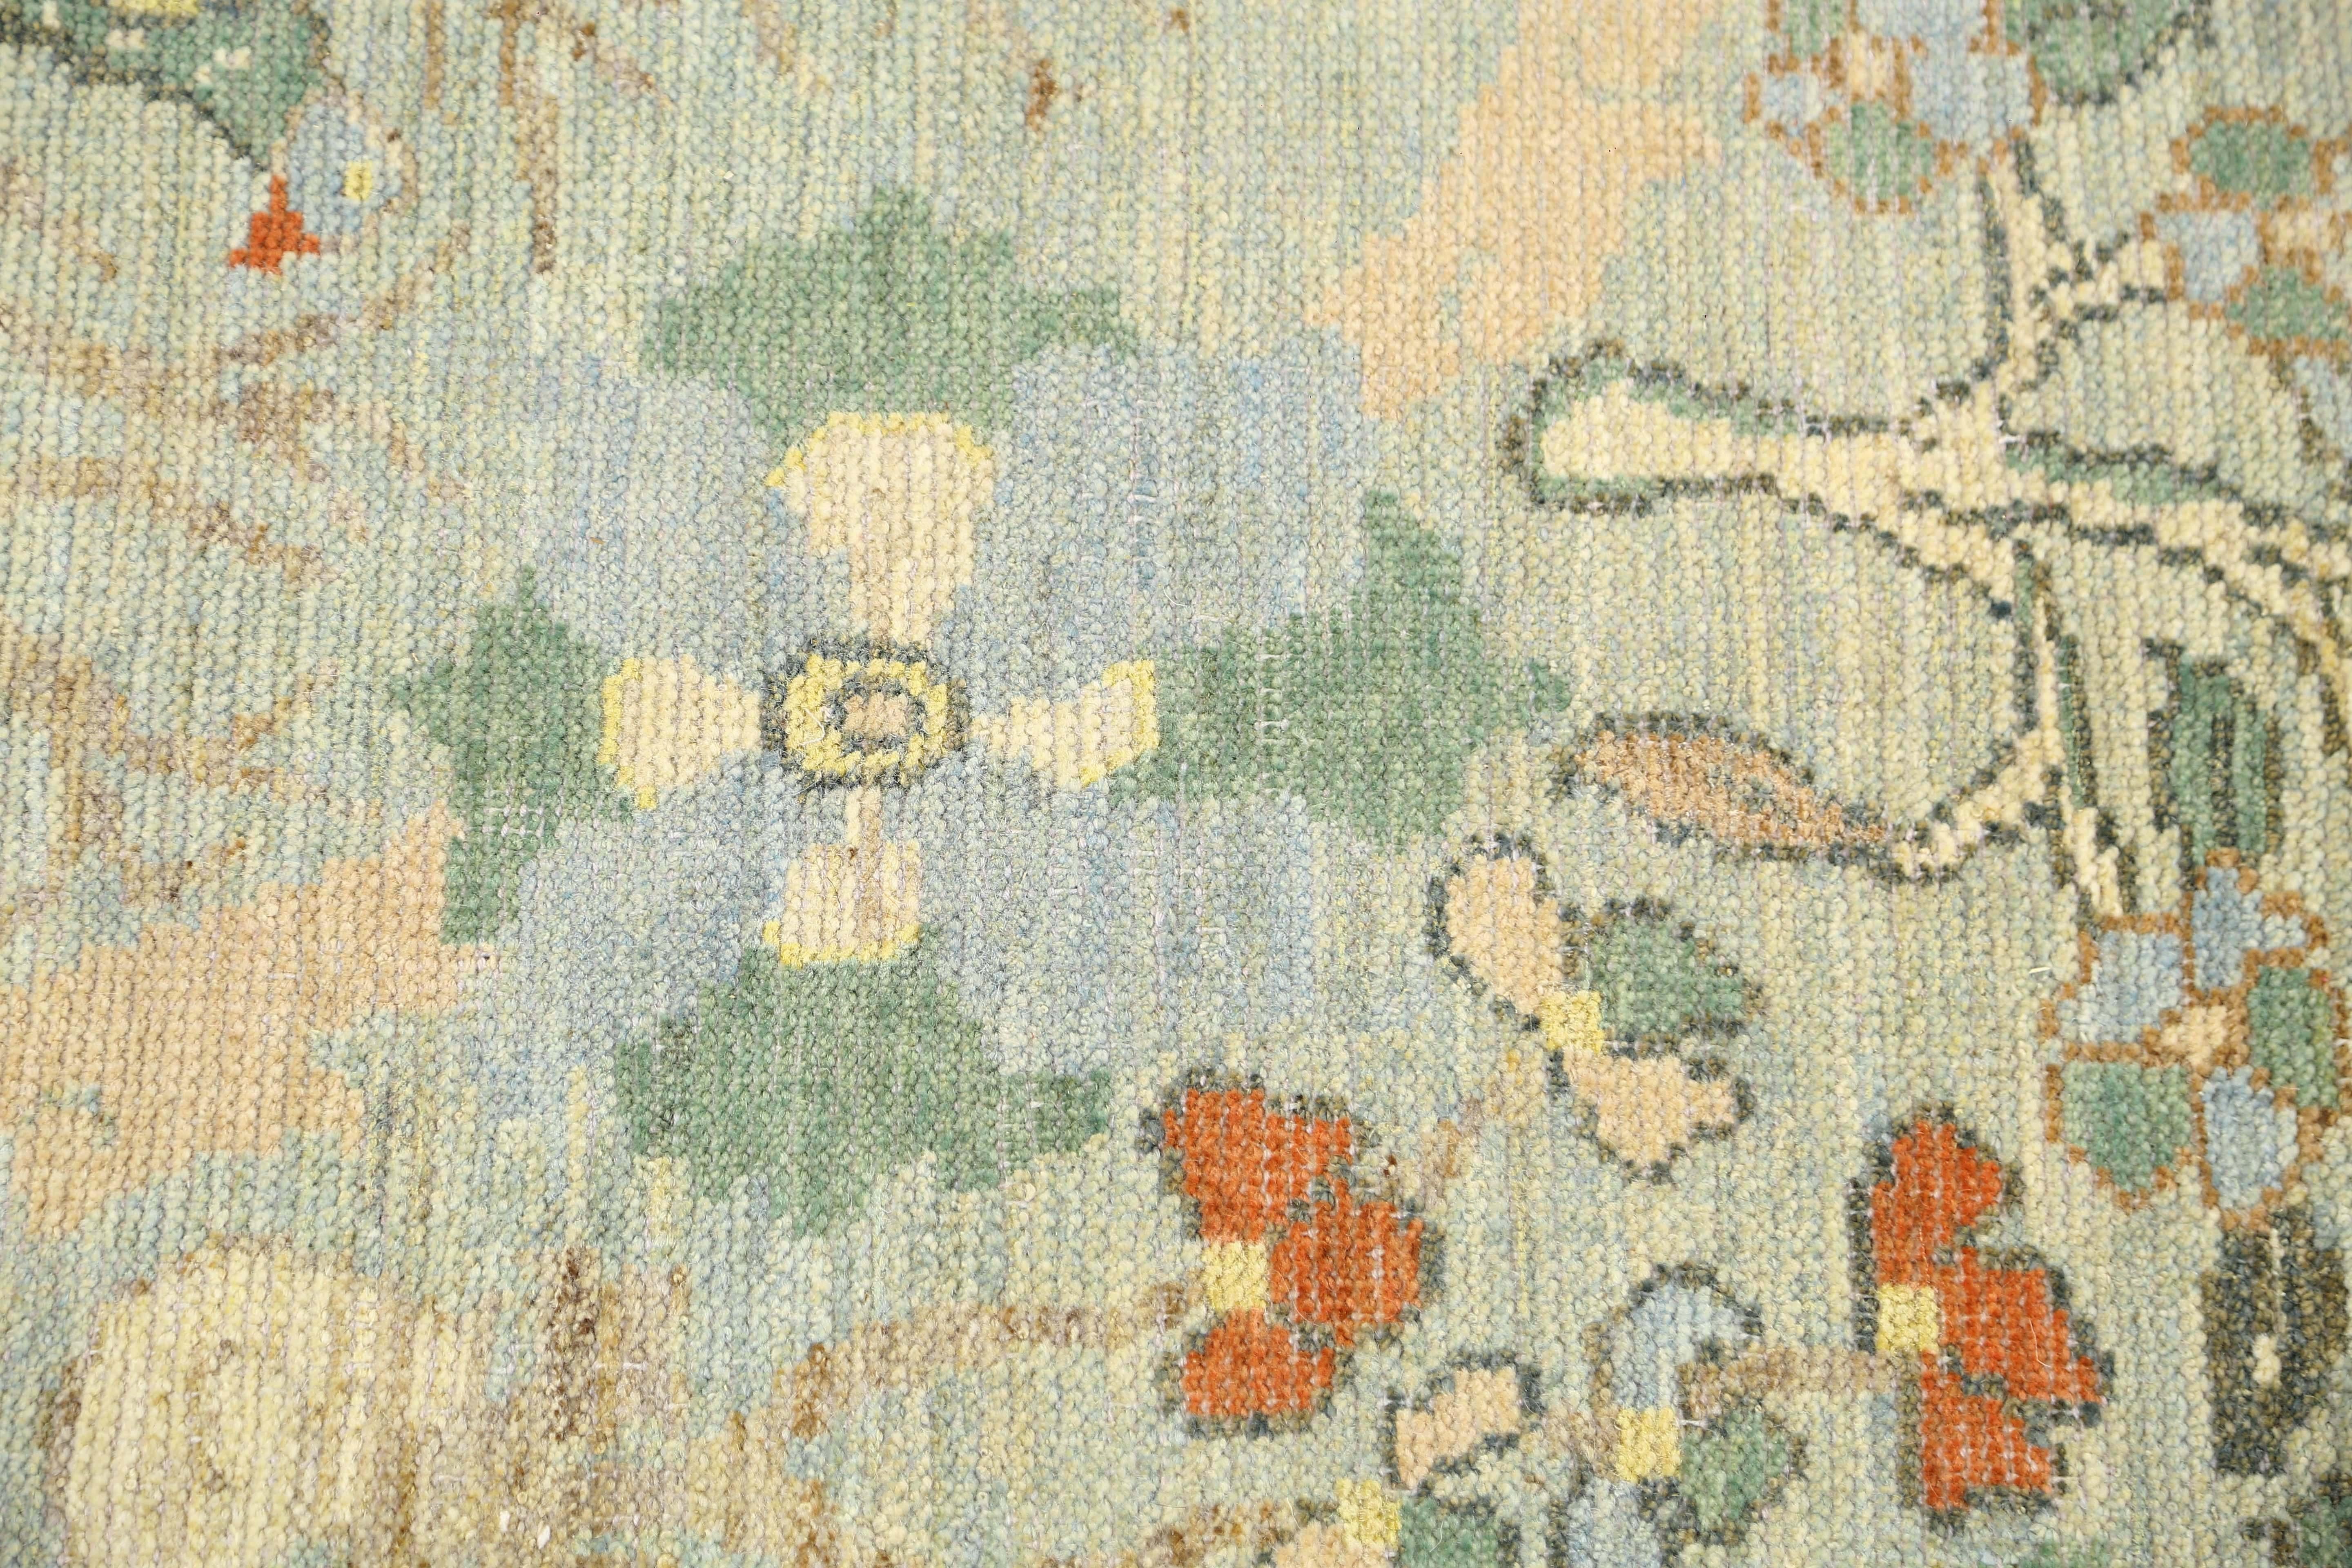 Bringen Sie einen Hauch von Natur in Ihr Zuhause mit diesem exquisiten türkischen Sultanabad-Teppich. Mit den Maßen 6'9'' x 10'3'' bietet dieser Teppich eine schöne Mischung aus Grün- und Blautönen, die jedem Raum eine heitere und beruhigende